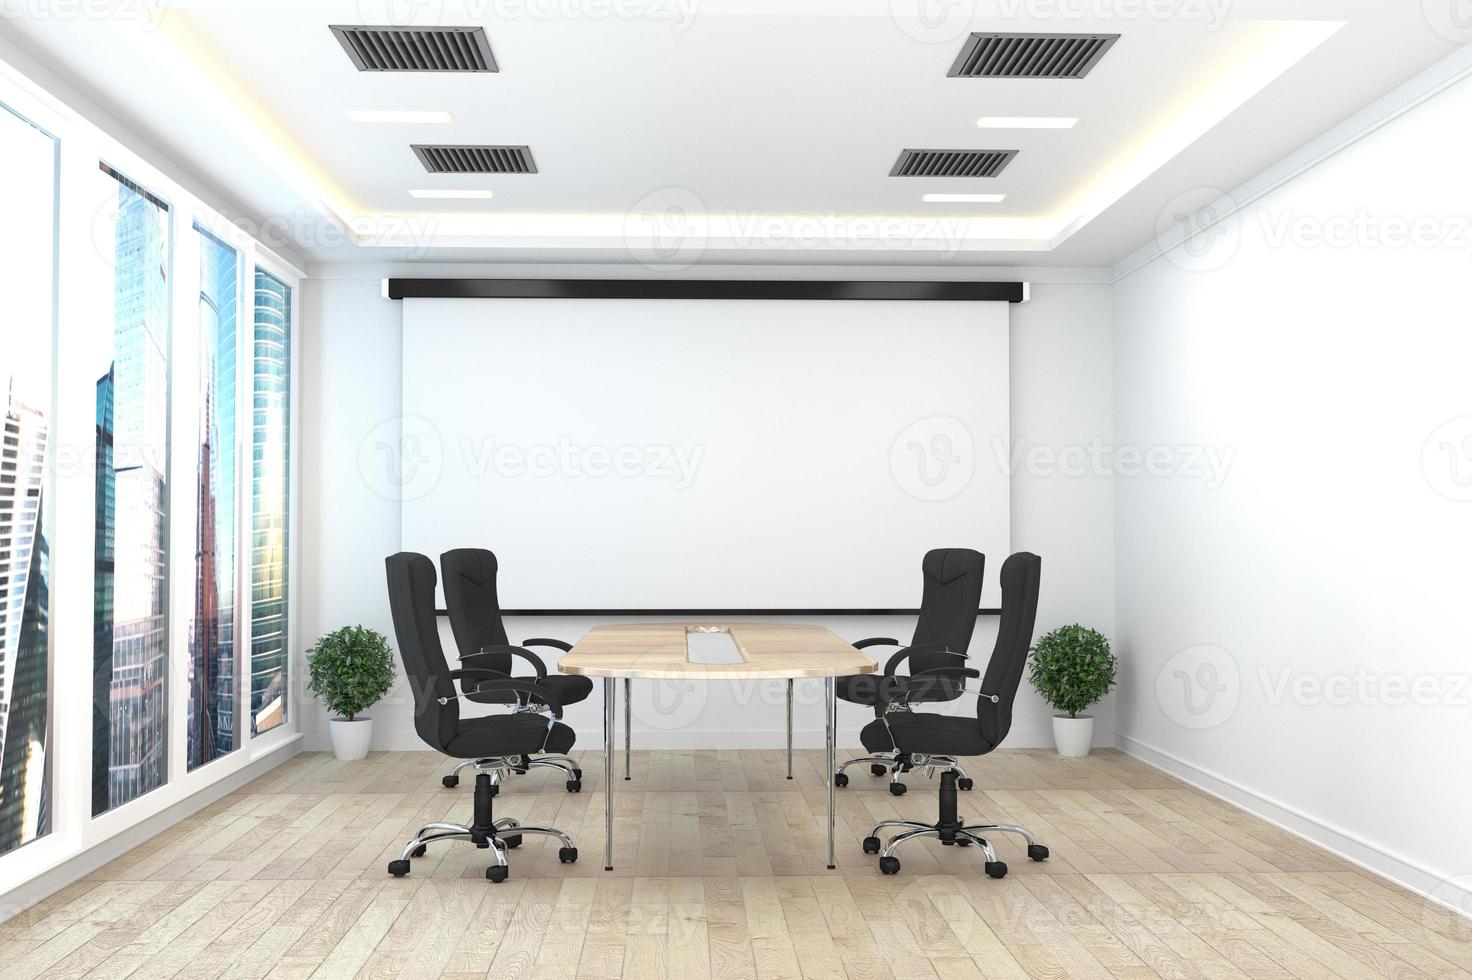 entreprise de bureau - belle salle de réunion et table de conférence, style moderne. rendu 3D photo